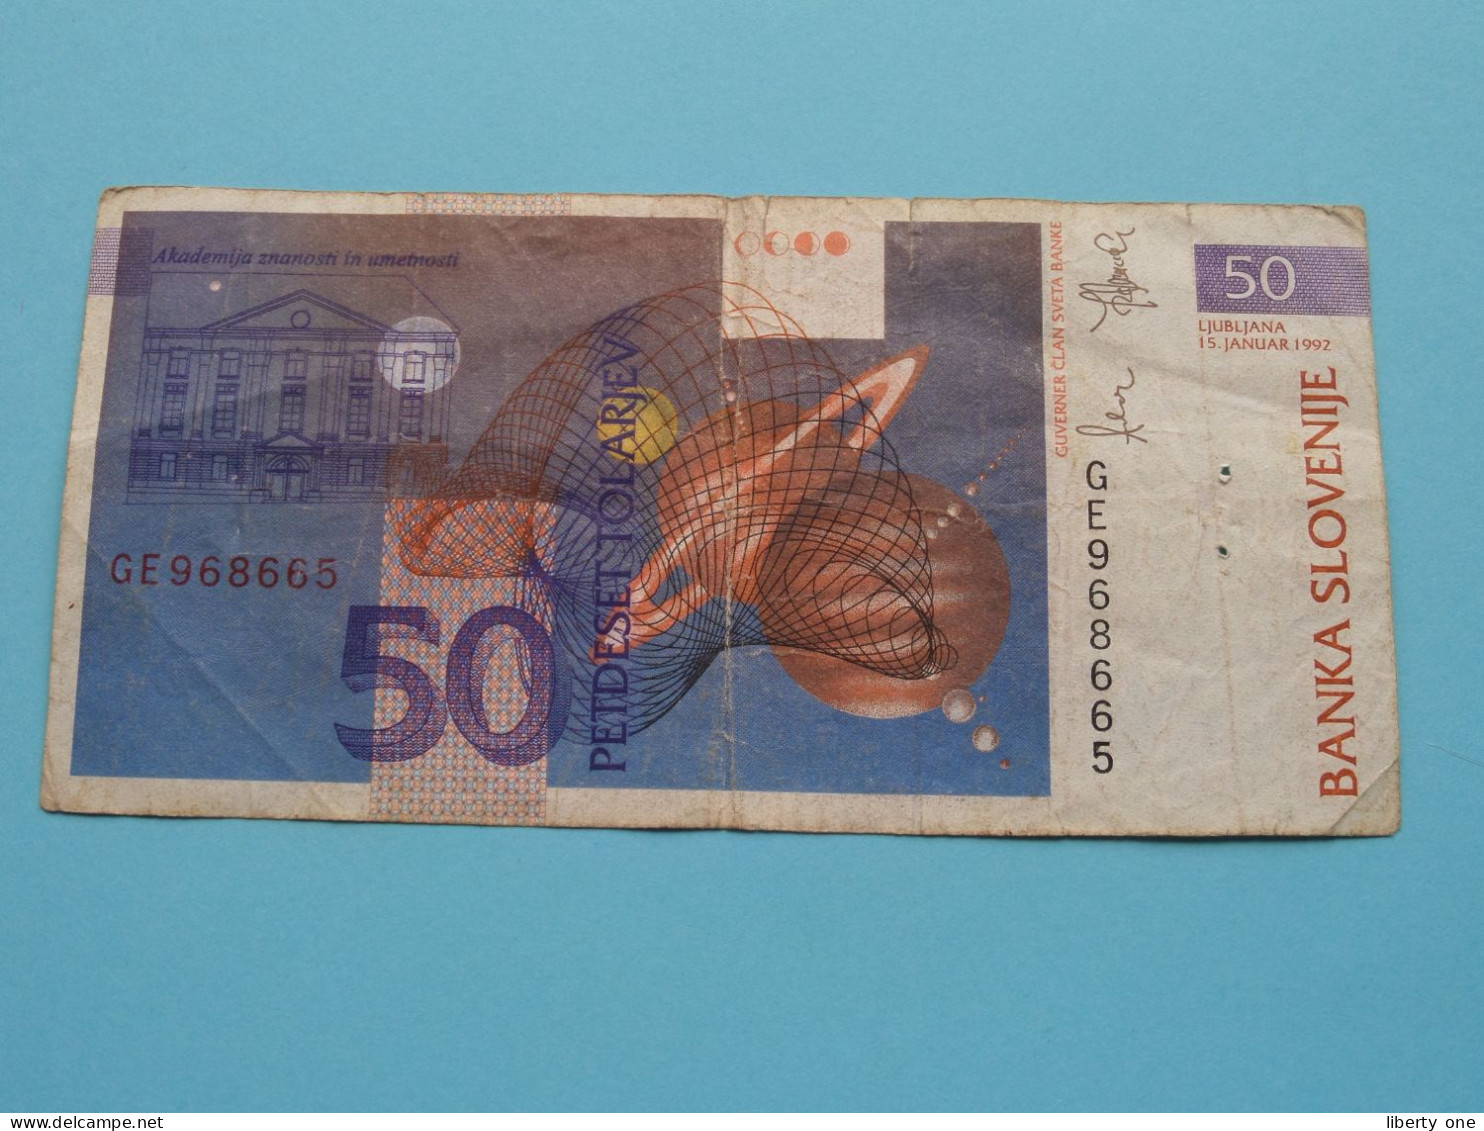 50 Tolarjev ( GE968665 ) Banka Slovenije - 1992( For Grade See SCAN ) Circulated ! - Slovenia